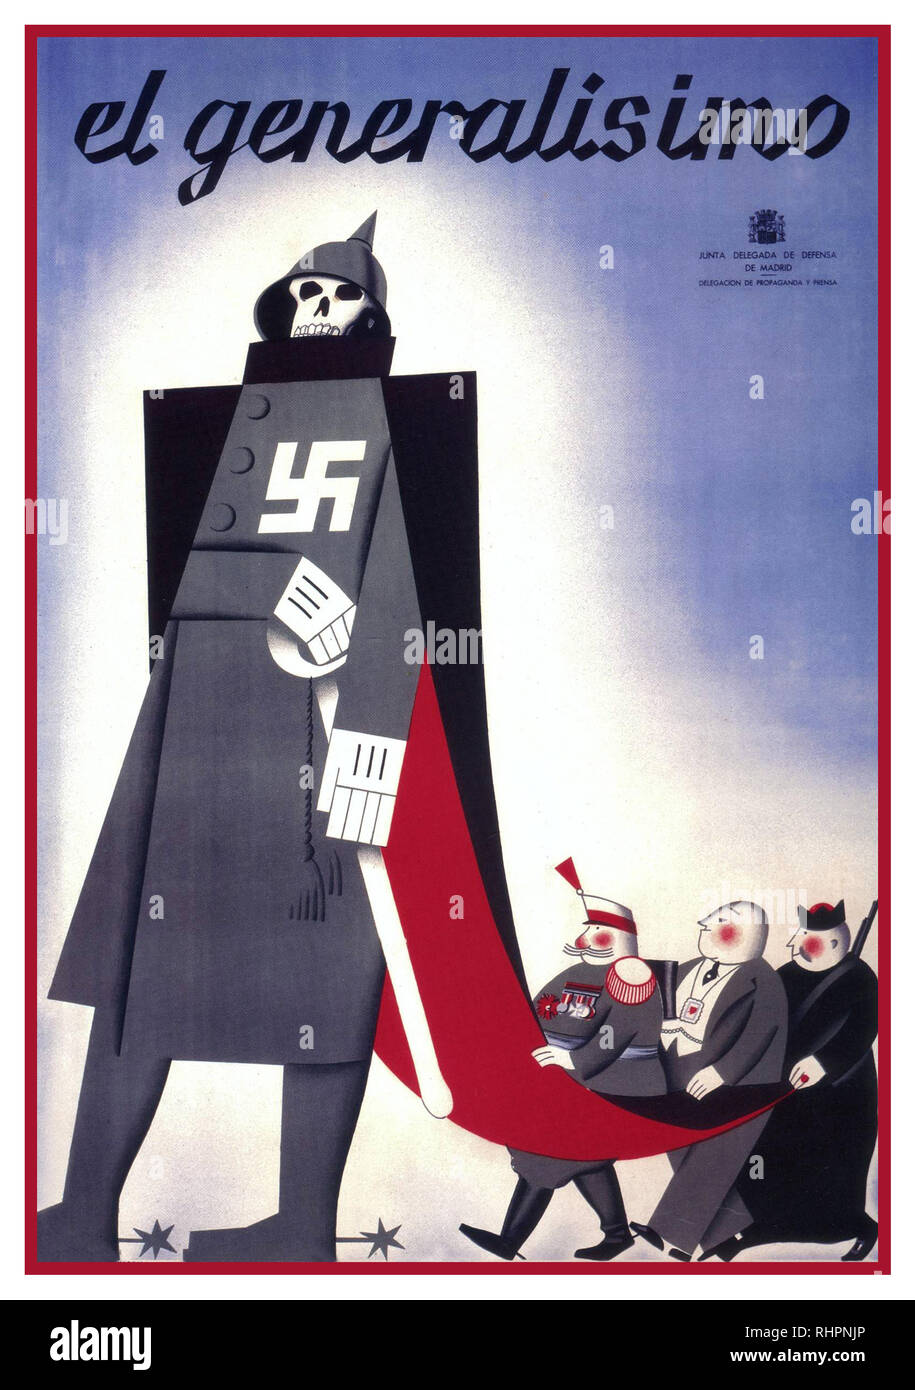 LE GÉNÉRAL FRANCO 'El Generalísimo' affiche ancienne de la Guerre civile espagnole du syndicat socialiste U.G.T., montrant une caricature d'un squelette de l'Allemagne nazie soutenu par l'étranger Franco suivi d'un général, d'un capitaliste et d'un prêtre, 1937 Banque D'Images